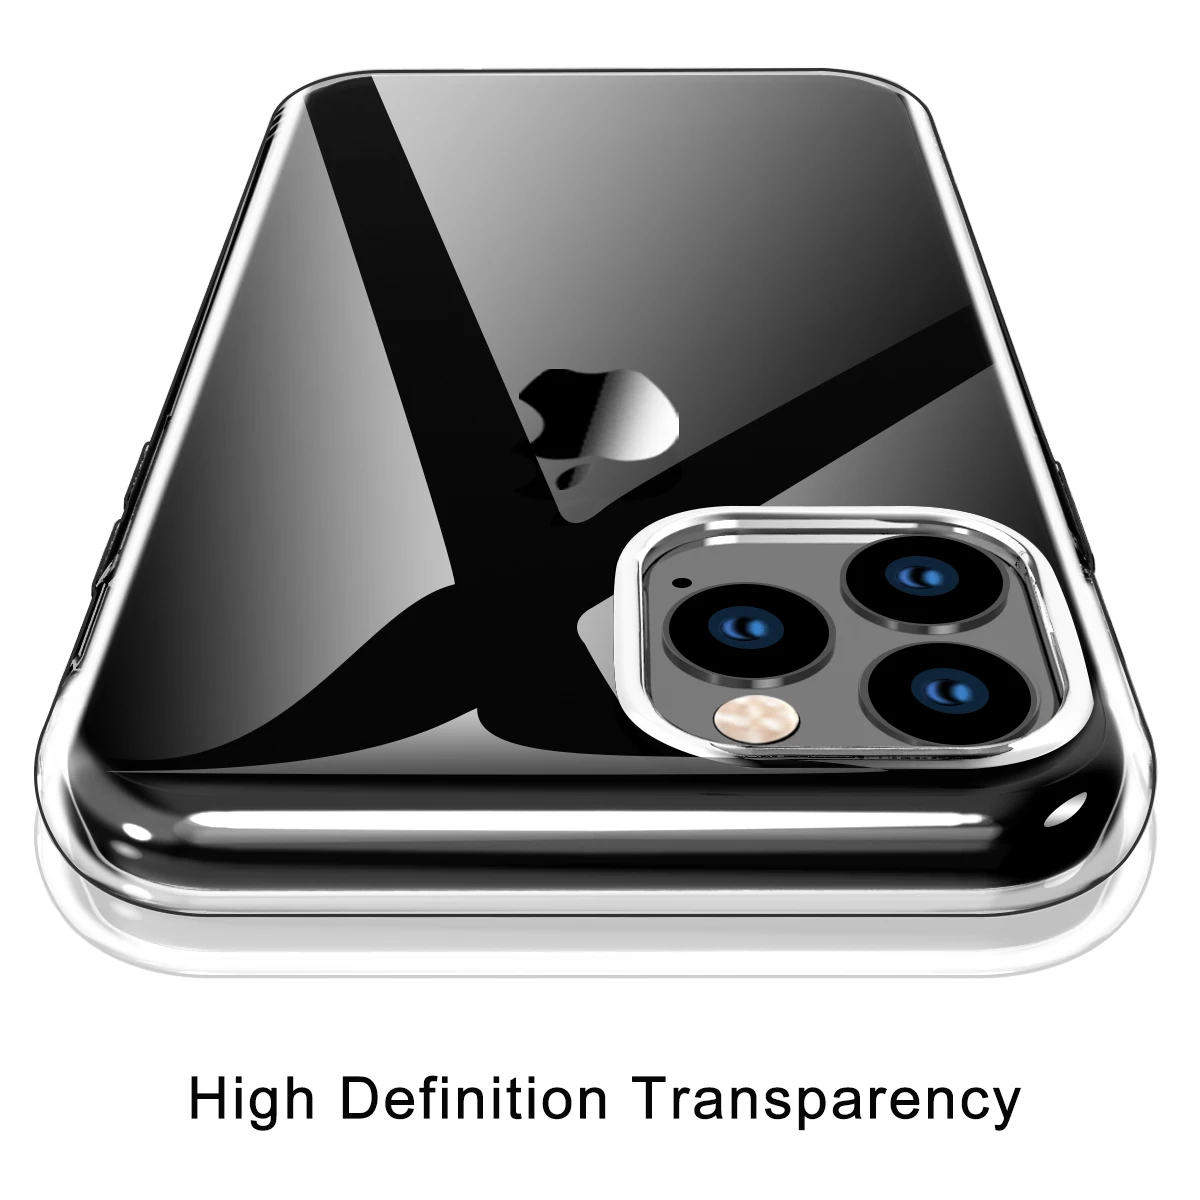 Чехол для iPhone 11, прозрачный тонкий чехол для телефона, жесткая задняя крышка из поликарбоната+ бампер из ТПУ, совместимый с Apple iPhone 11, чехол s